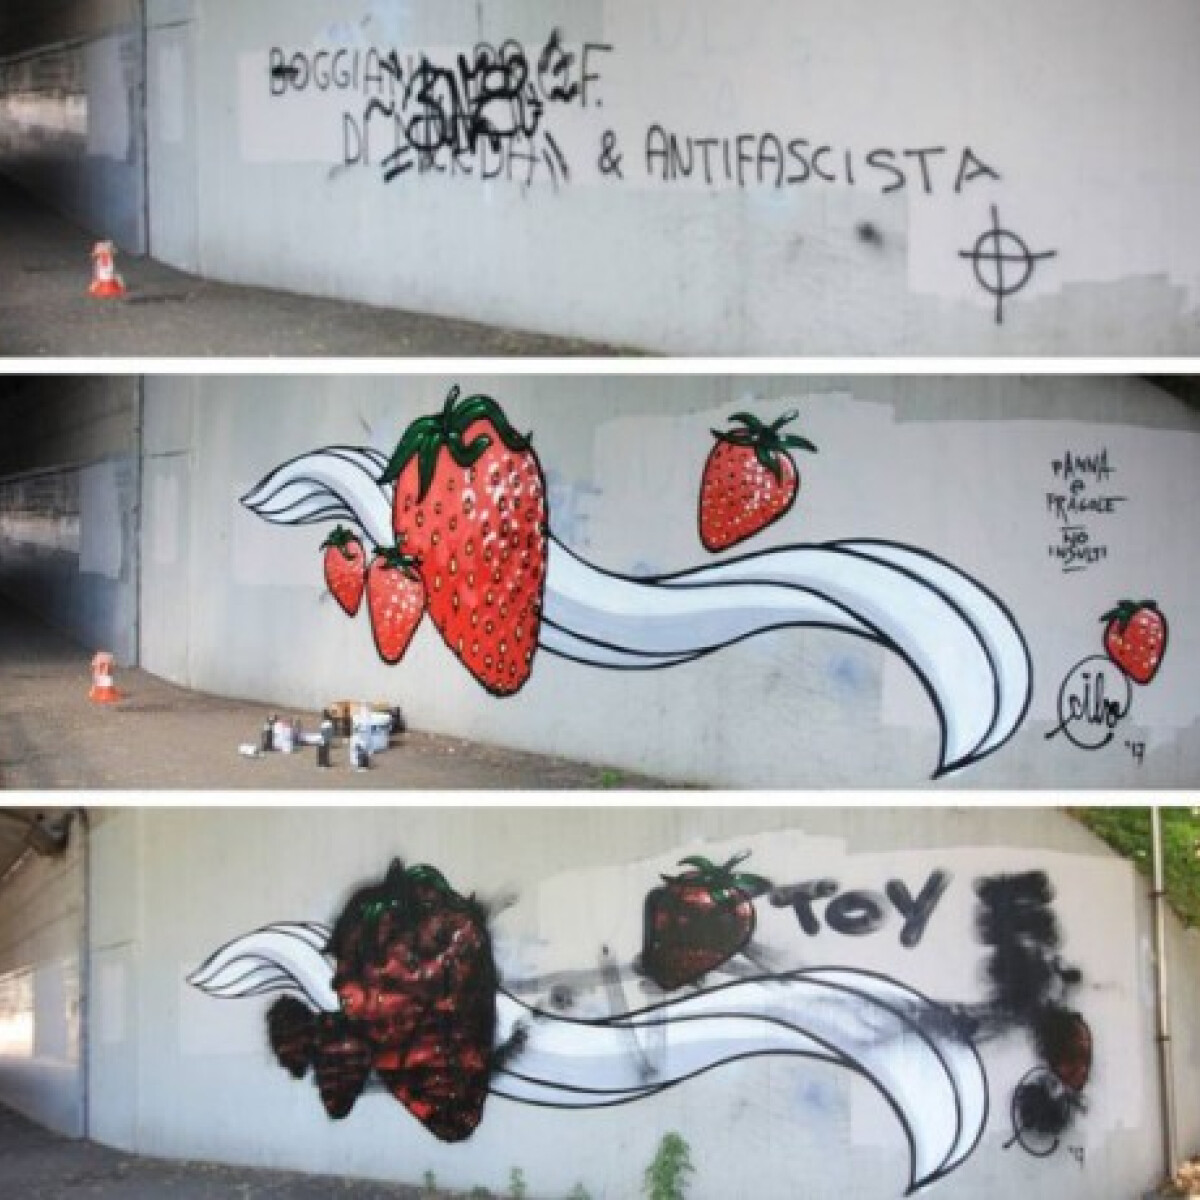 Egyél, ne gyűlölködj! - Egy street art művész felvette a harcot a szélsőségesekkel